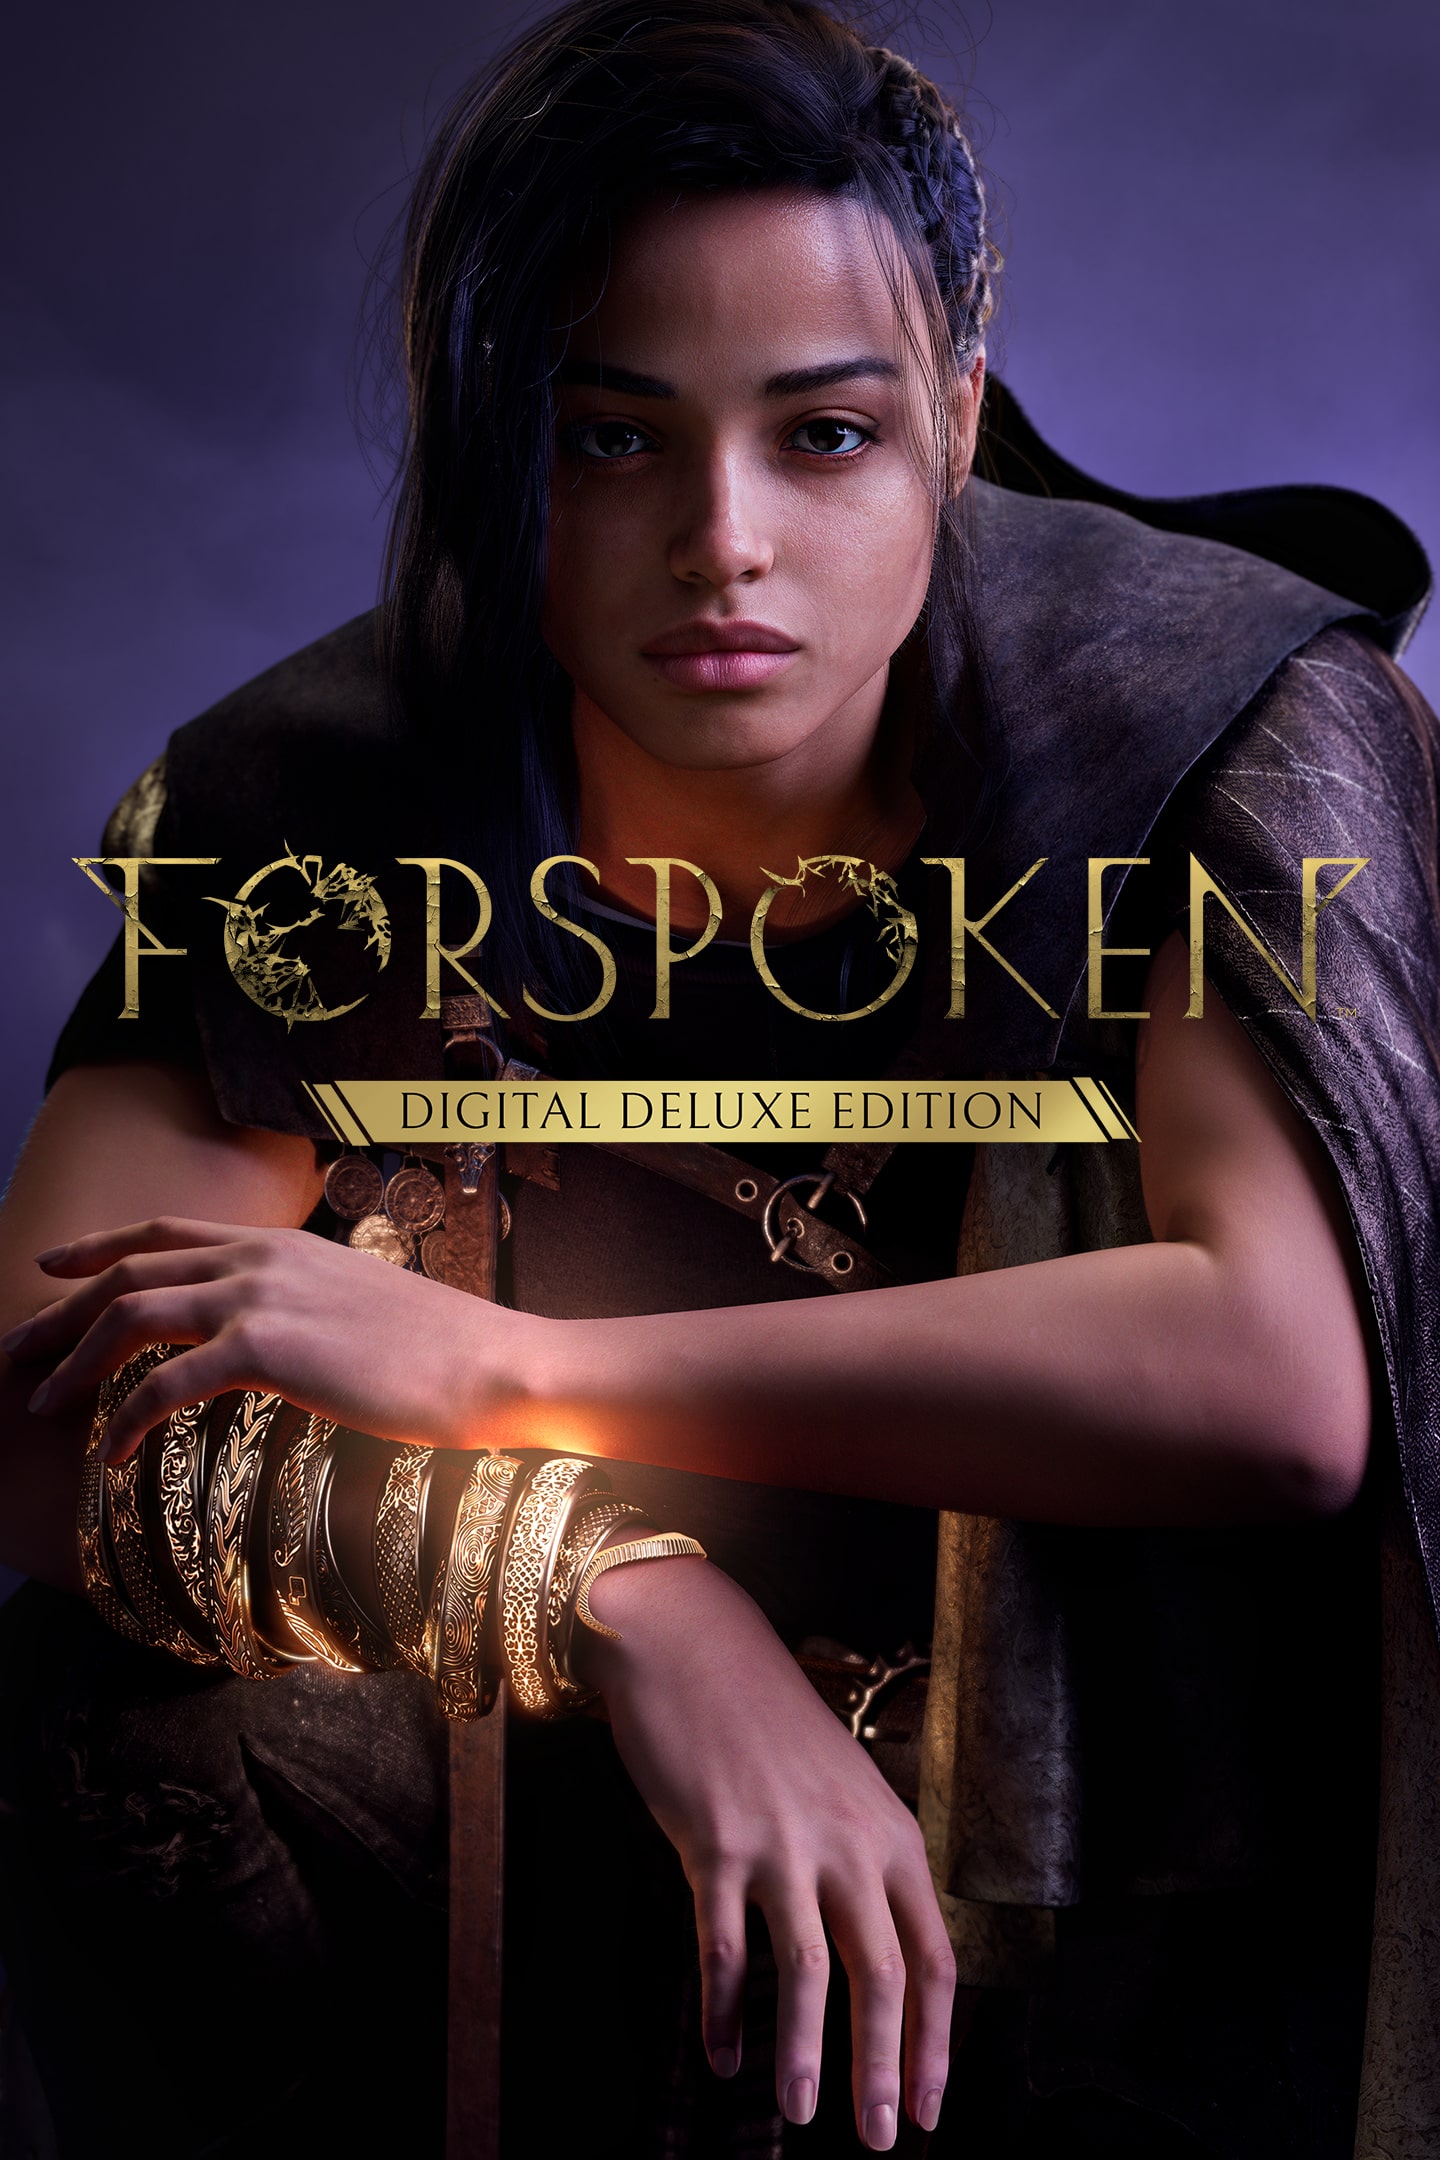  Forspoken - PlayStation 5 (PS5) EU Version Region Free